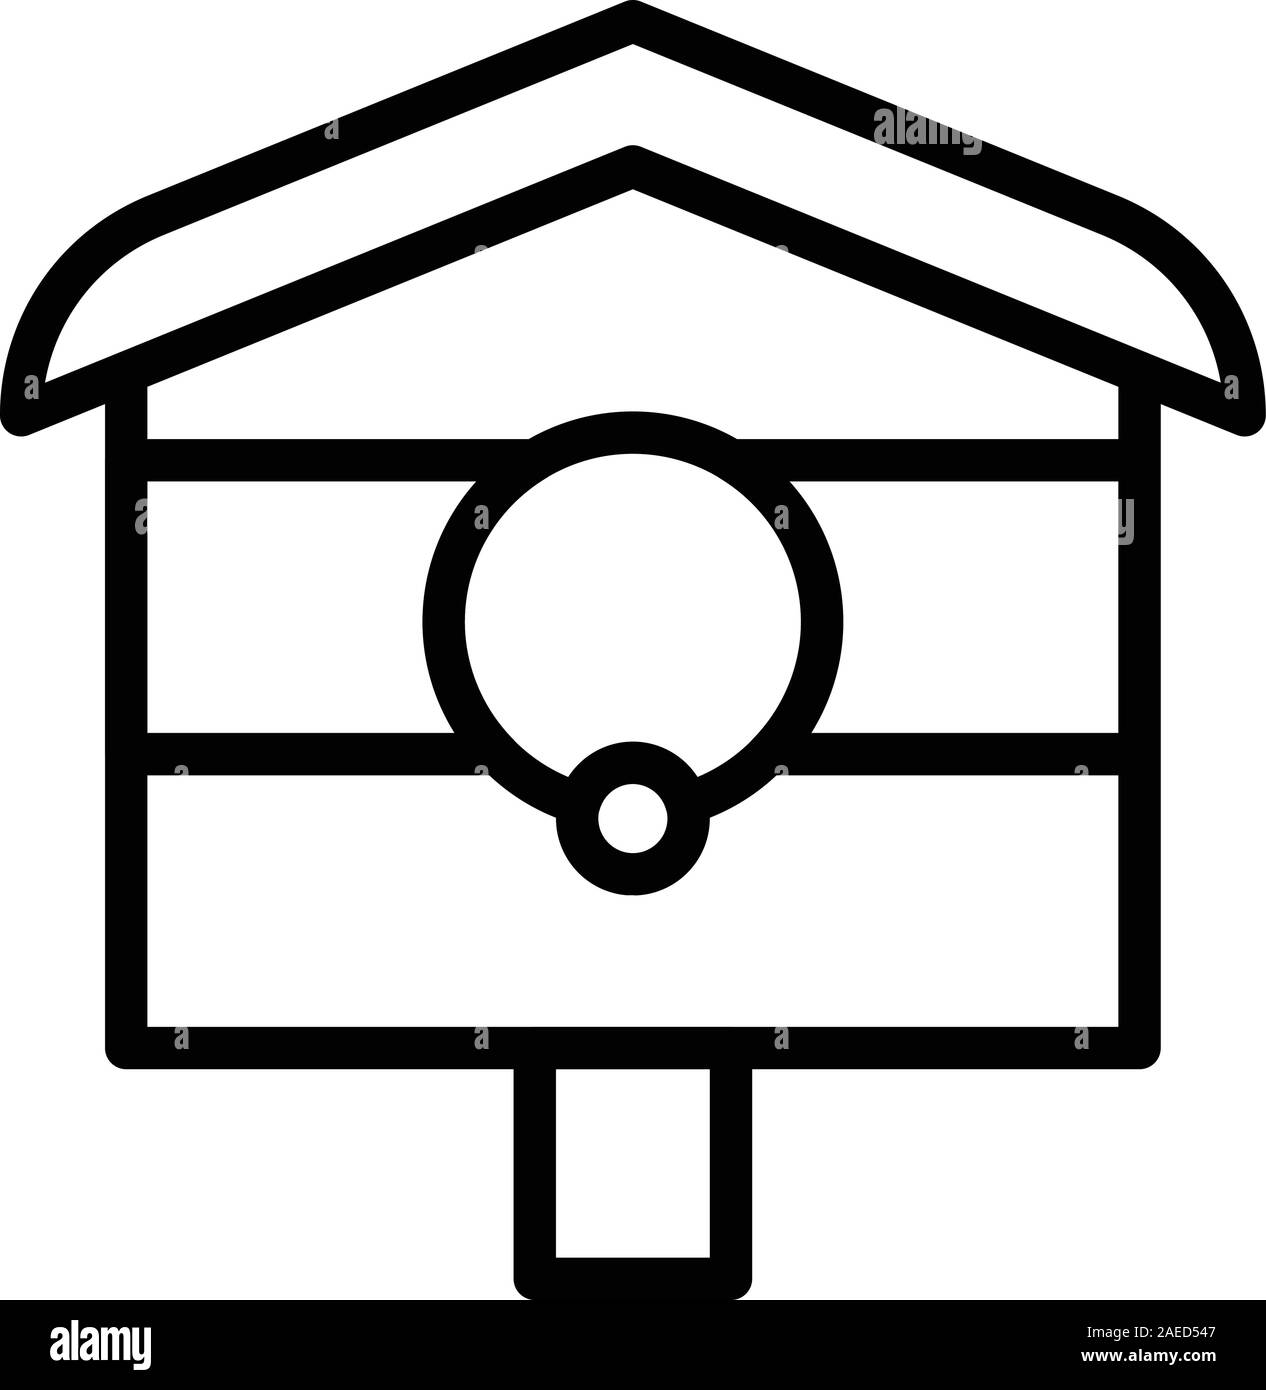 Backyard bird house icon, outline style Stock Vector